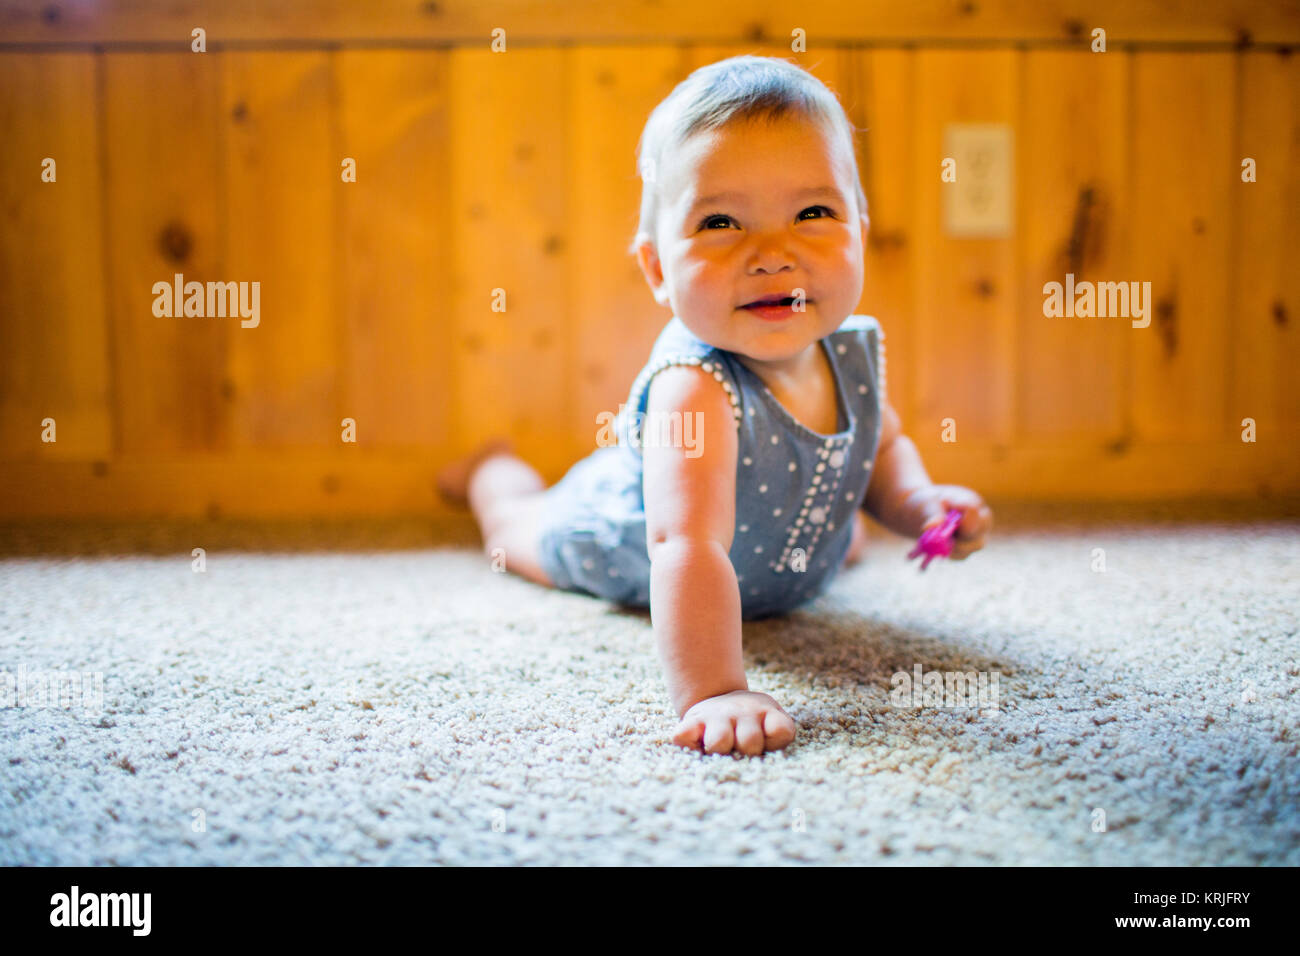 Sonriente niña de raza mixta arrastrándose sobre alfombra Foto de stock